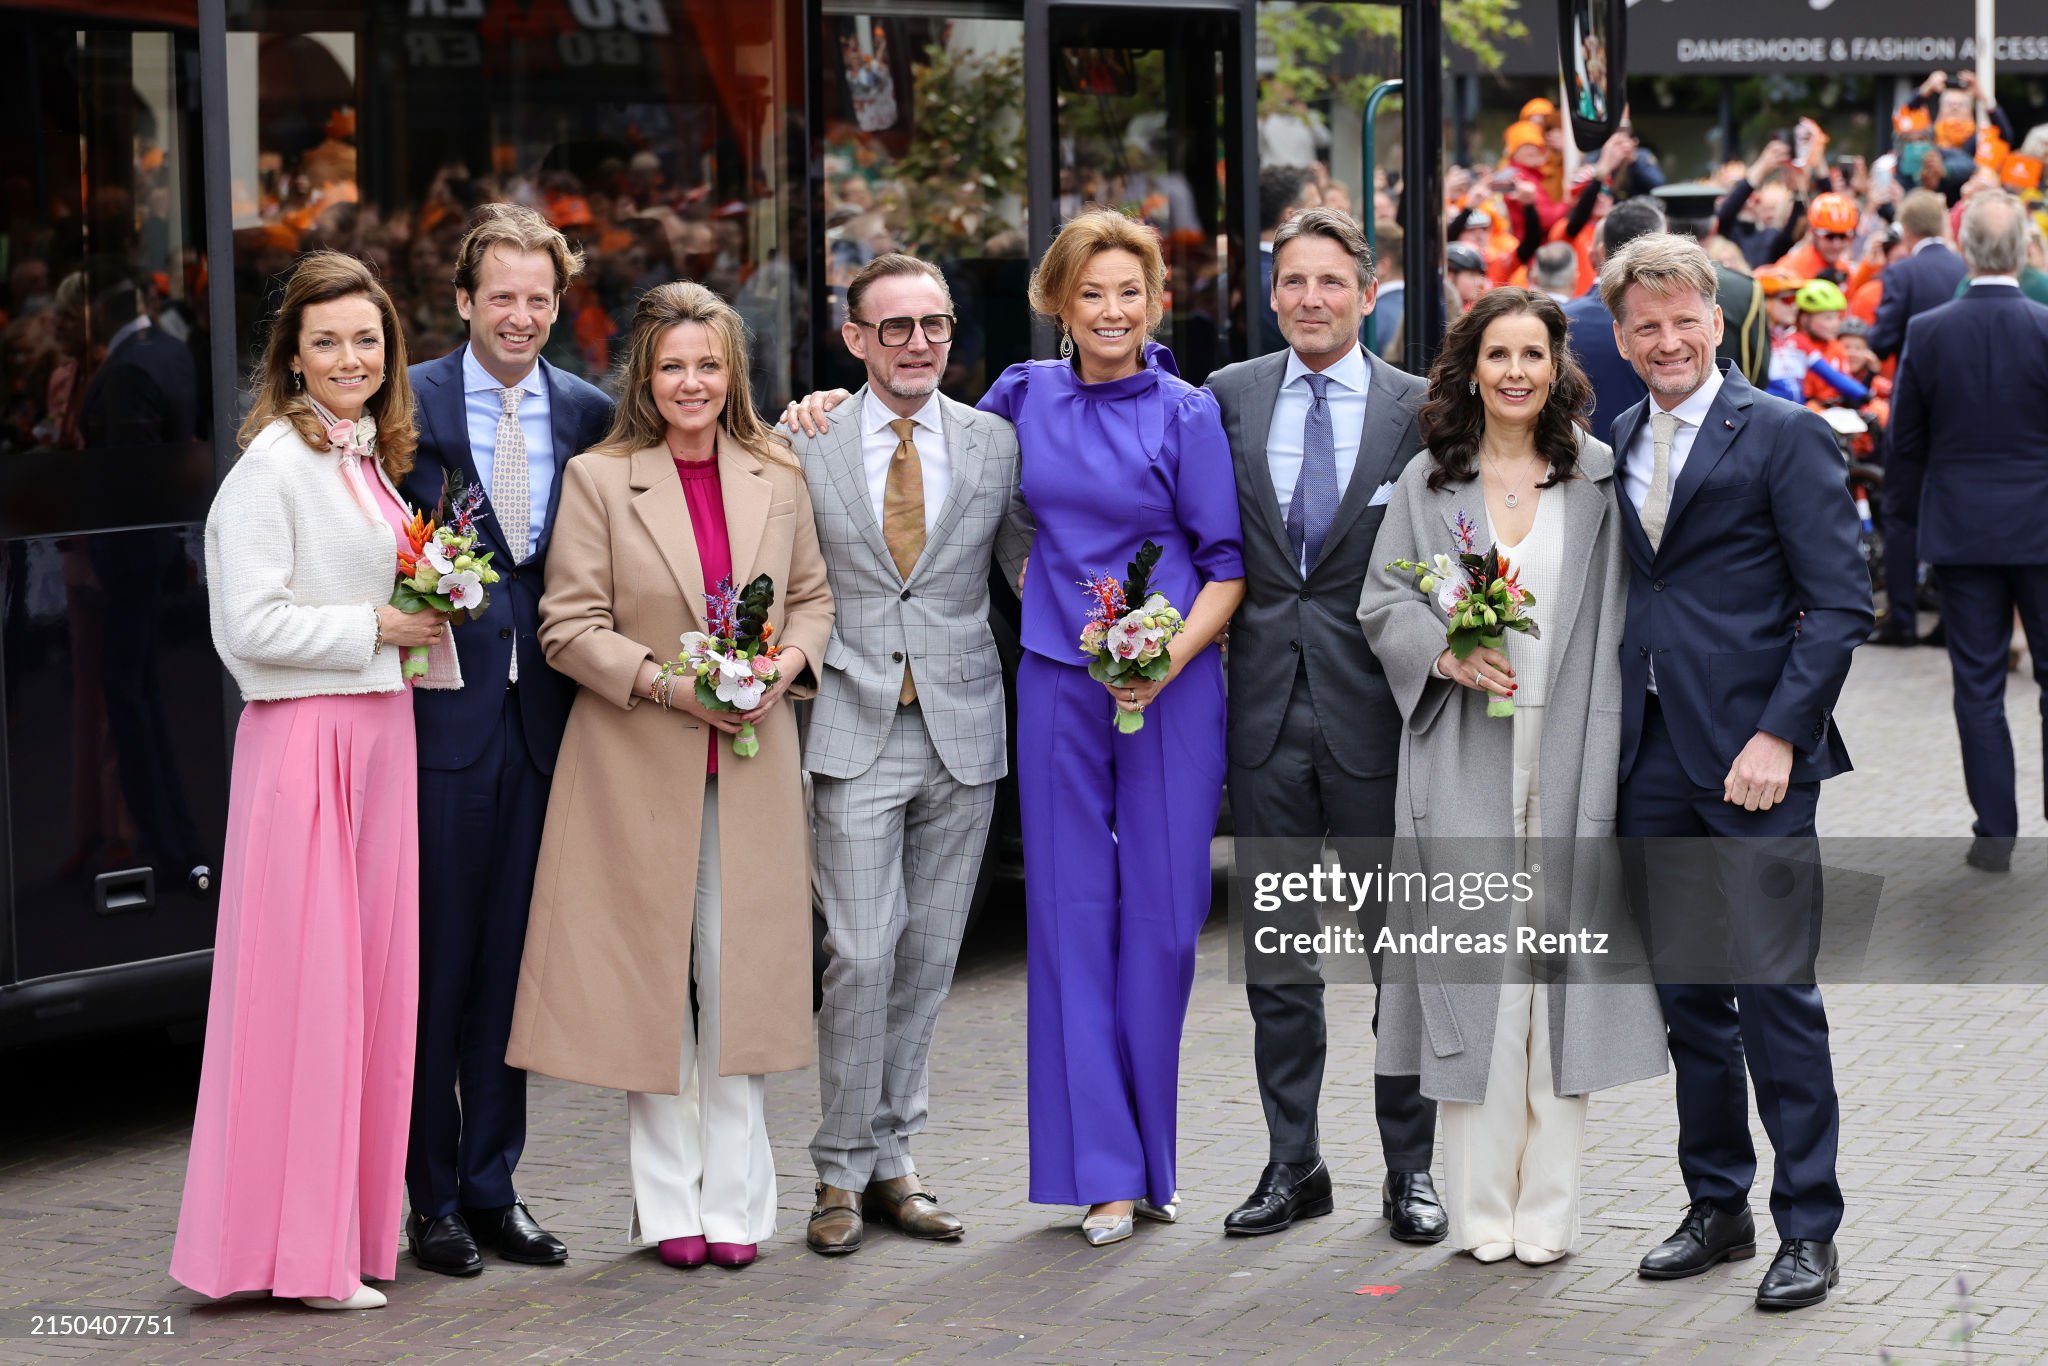 dutch-royal-family-celebrates-kingsday-in-emmen.jpg?s=2048x2048&w=gi&k=20&c=V28zkxtYWopVYBIgMSND2ocXWgPrgRw5yBIeXakmPcc=